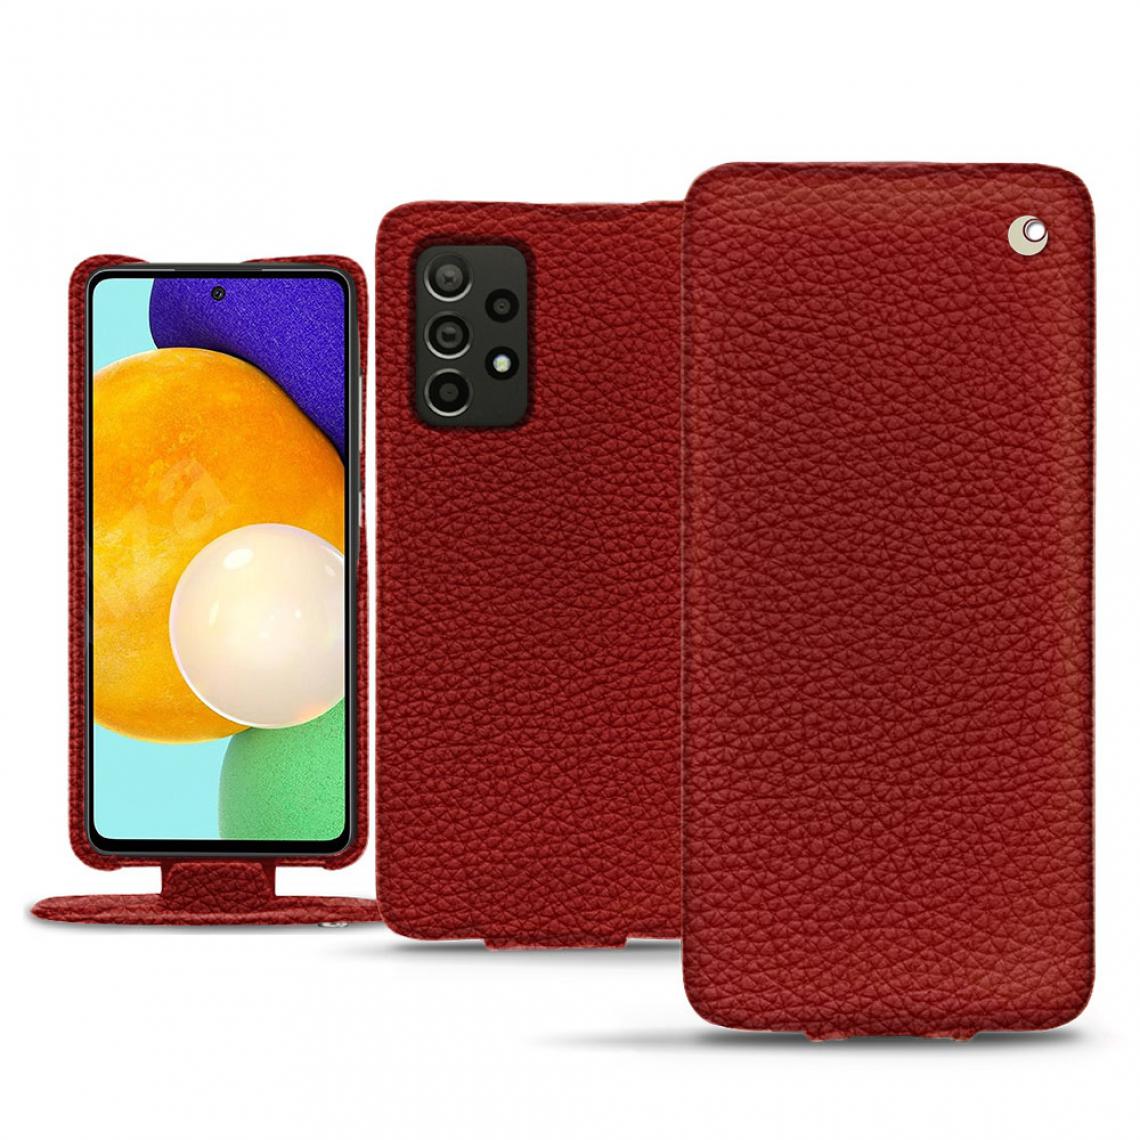 Noreve - Housse cuir Samsung Galaxy A52 - Rabat vertical - Tomate ( Pantone 187C ) - cuir Ambition - NOREVE - Coque, étui smartphone